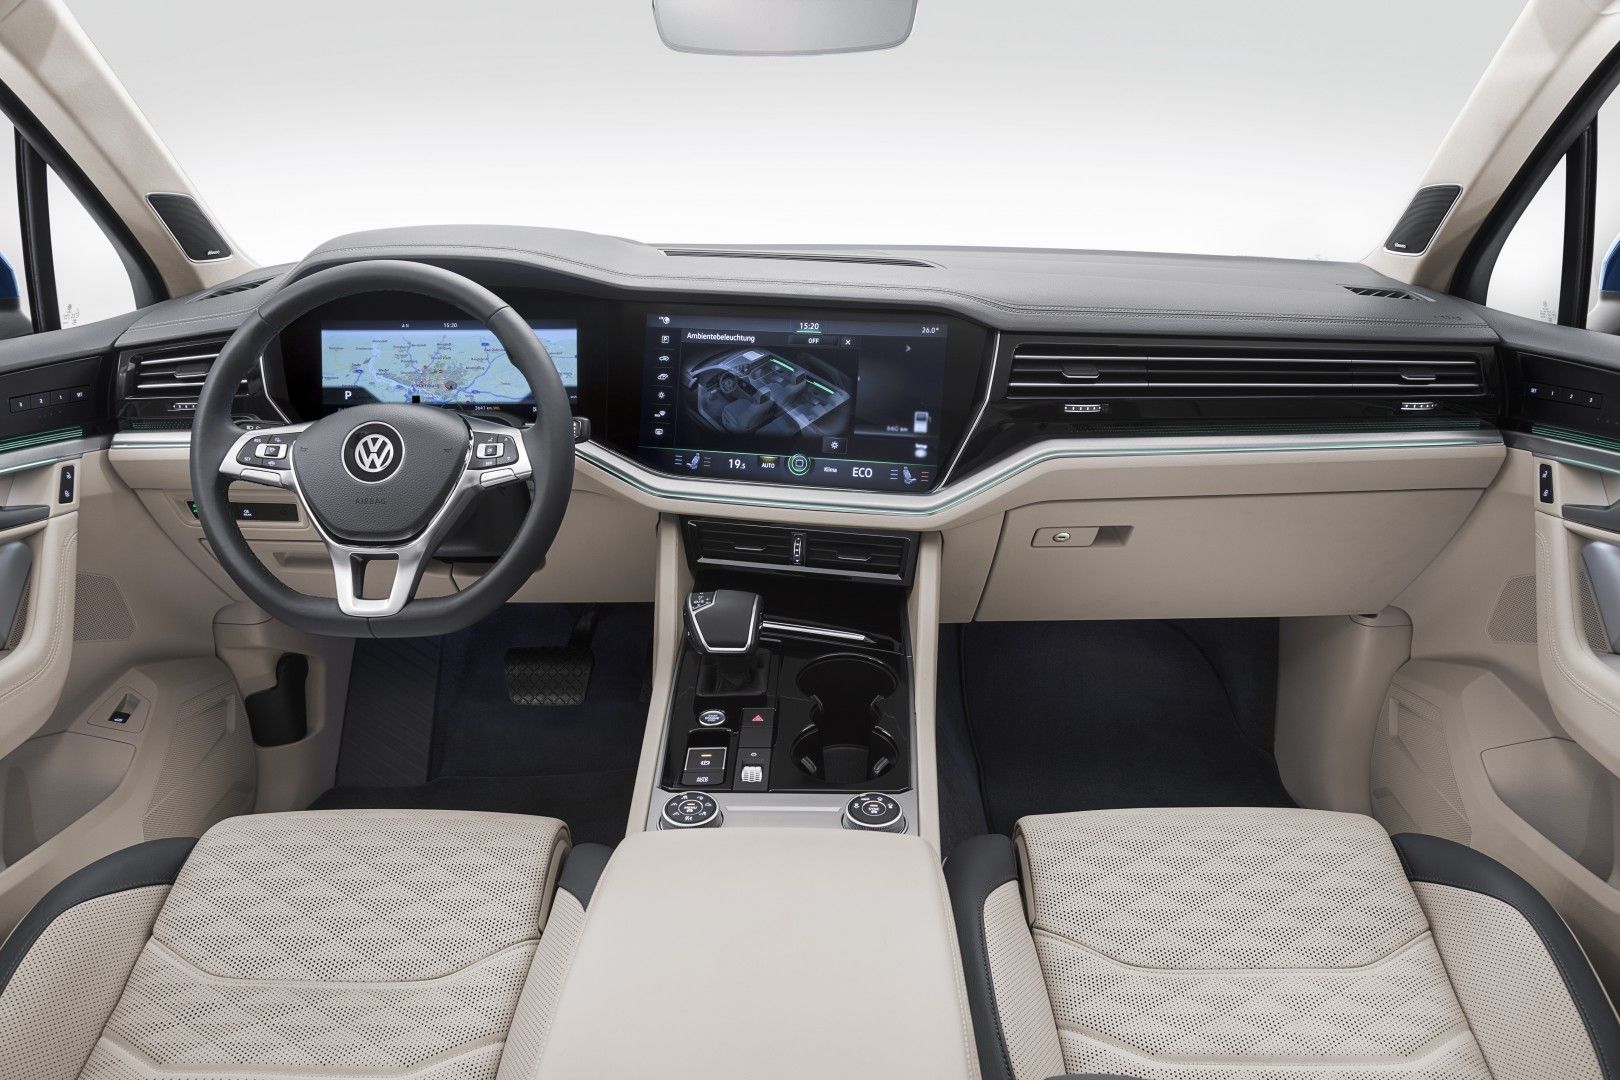 VW Touareg 2018 Interior 3